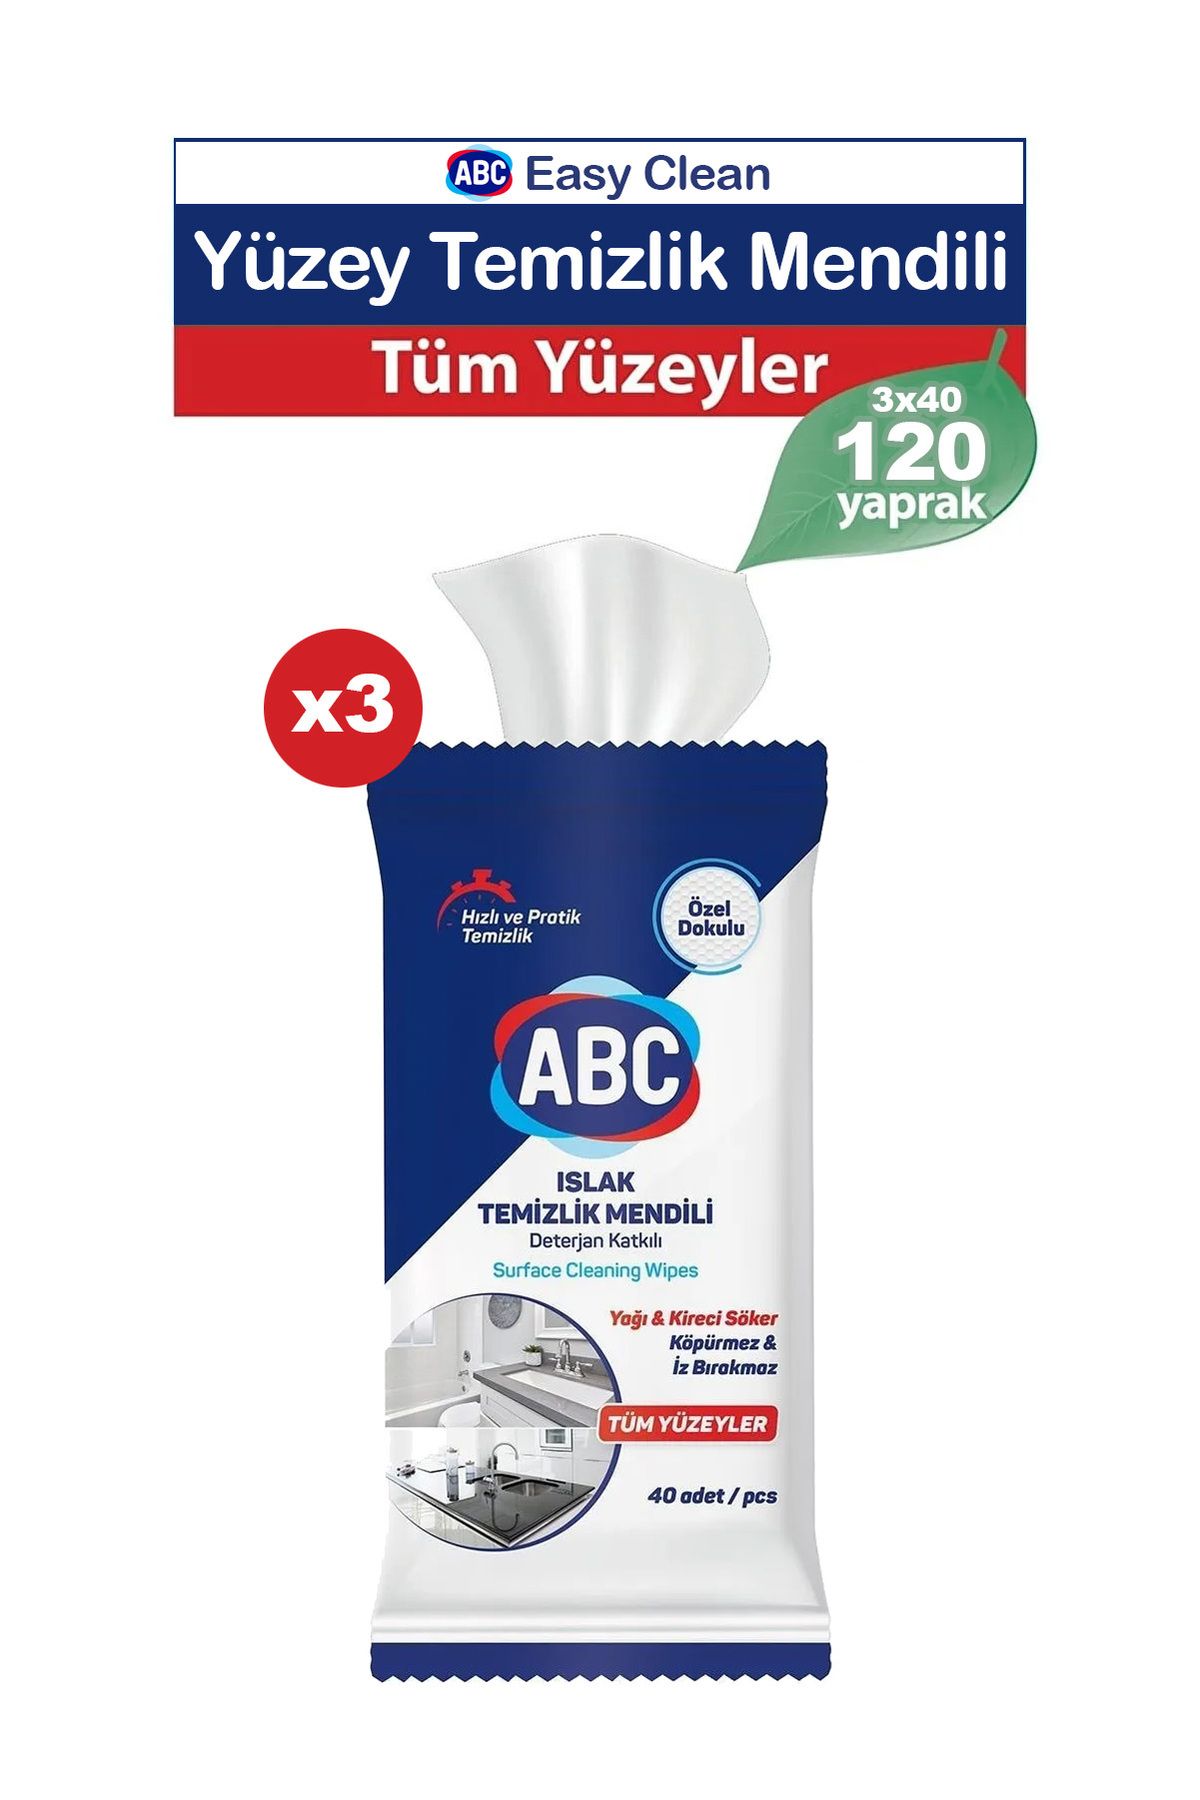 ABC Easy Clean Yüzey Temizleme Havlusu 120 yaprak